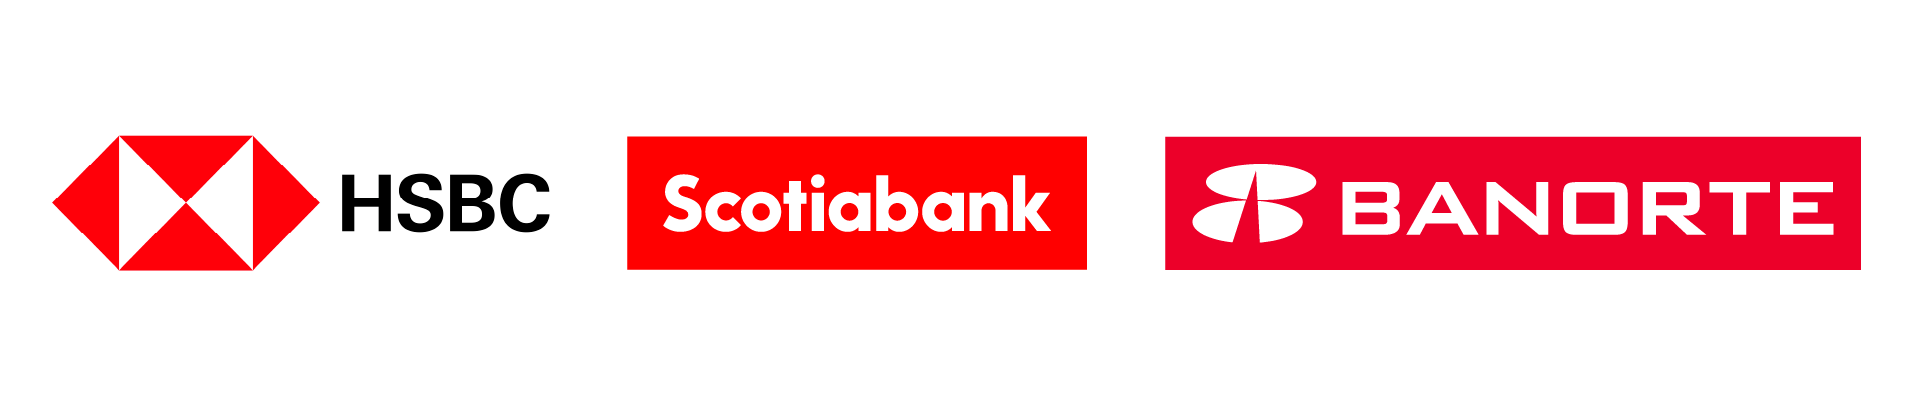 HSBC, Scotiabank y Banorte